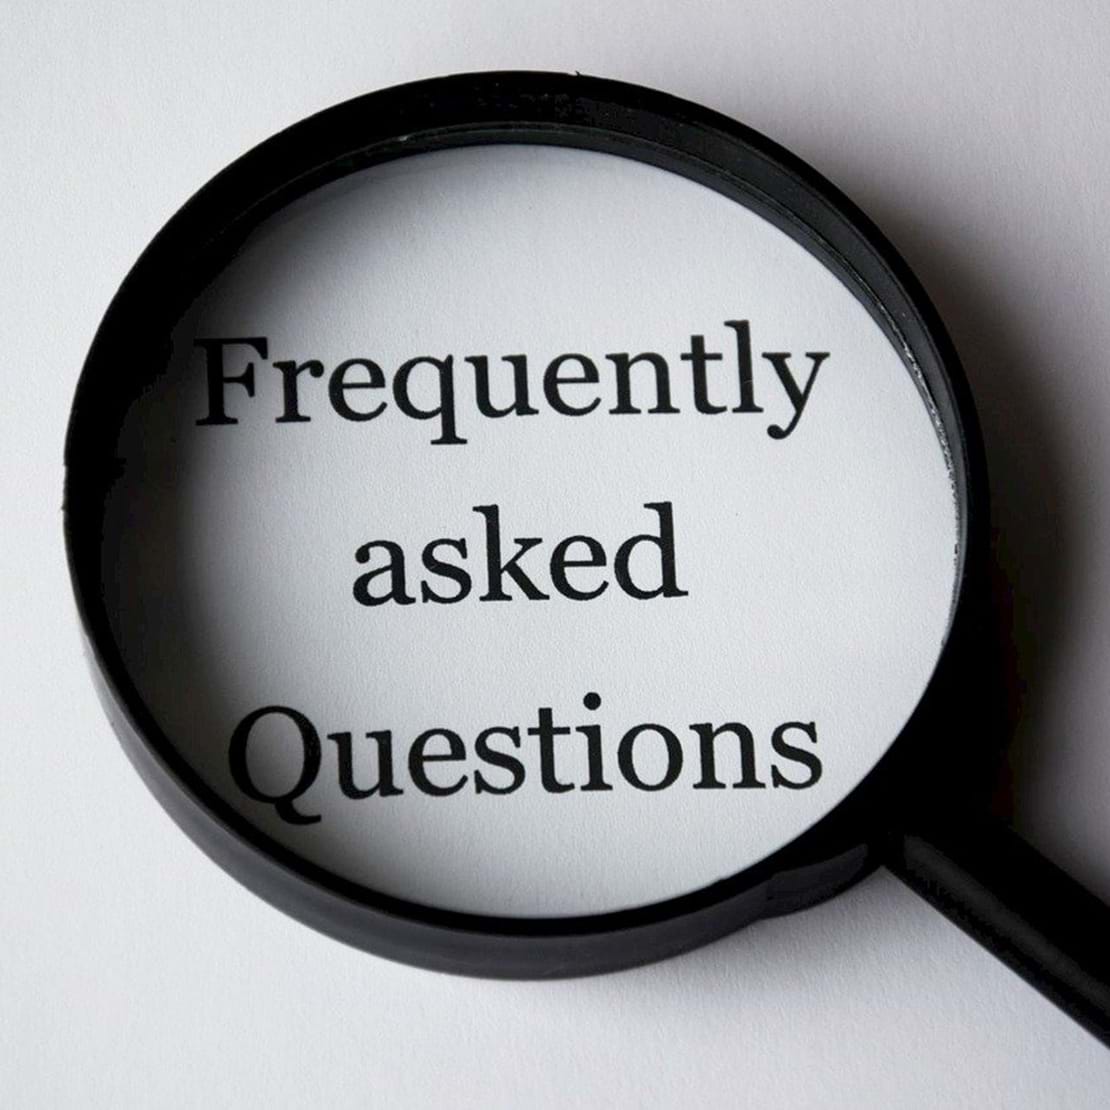 Billede af et forstørrelsesglas der forstørrer teksten 'Frequently asked questions'.